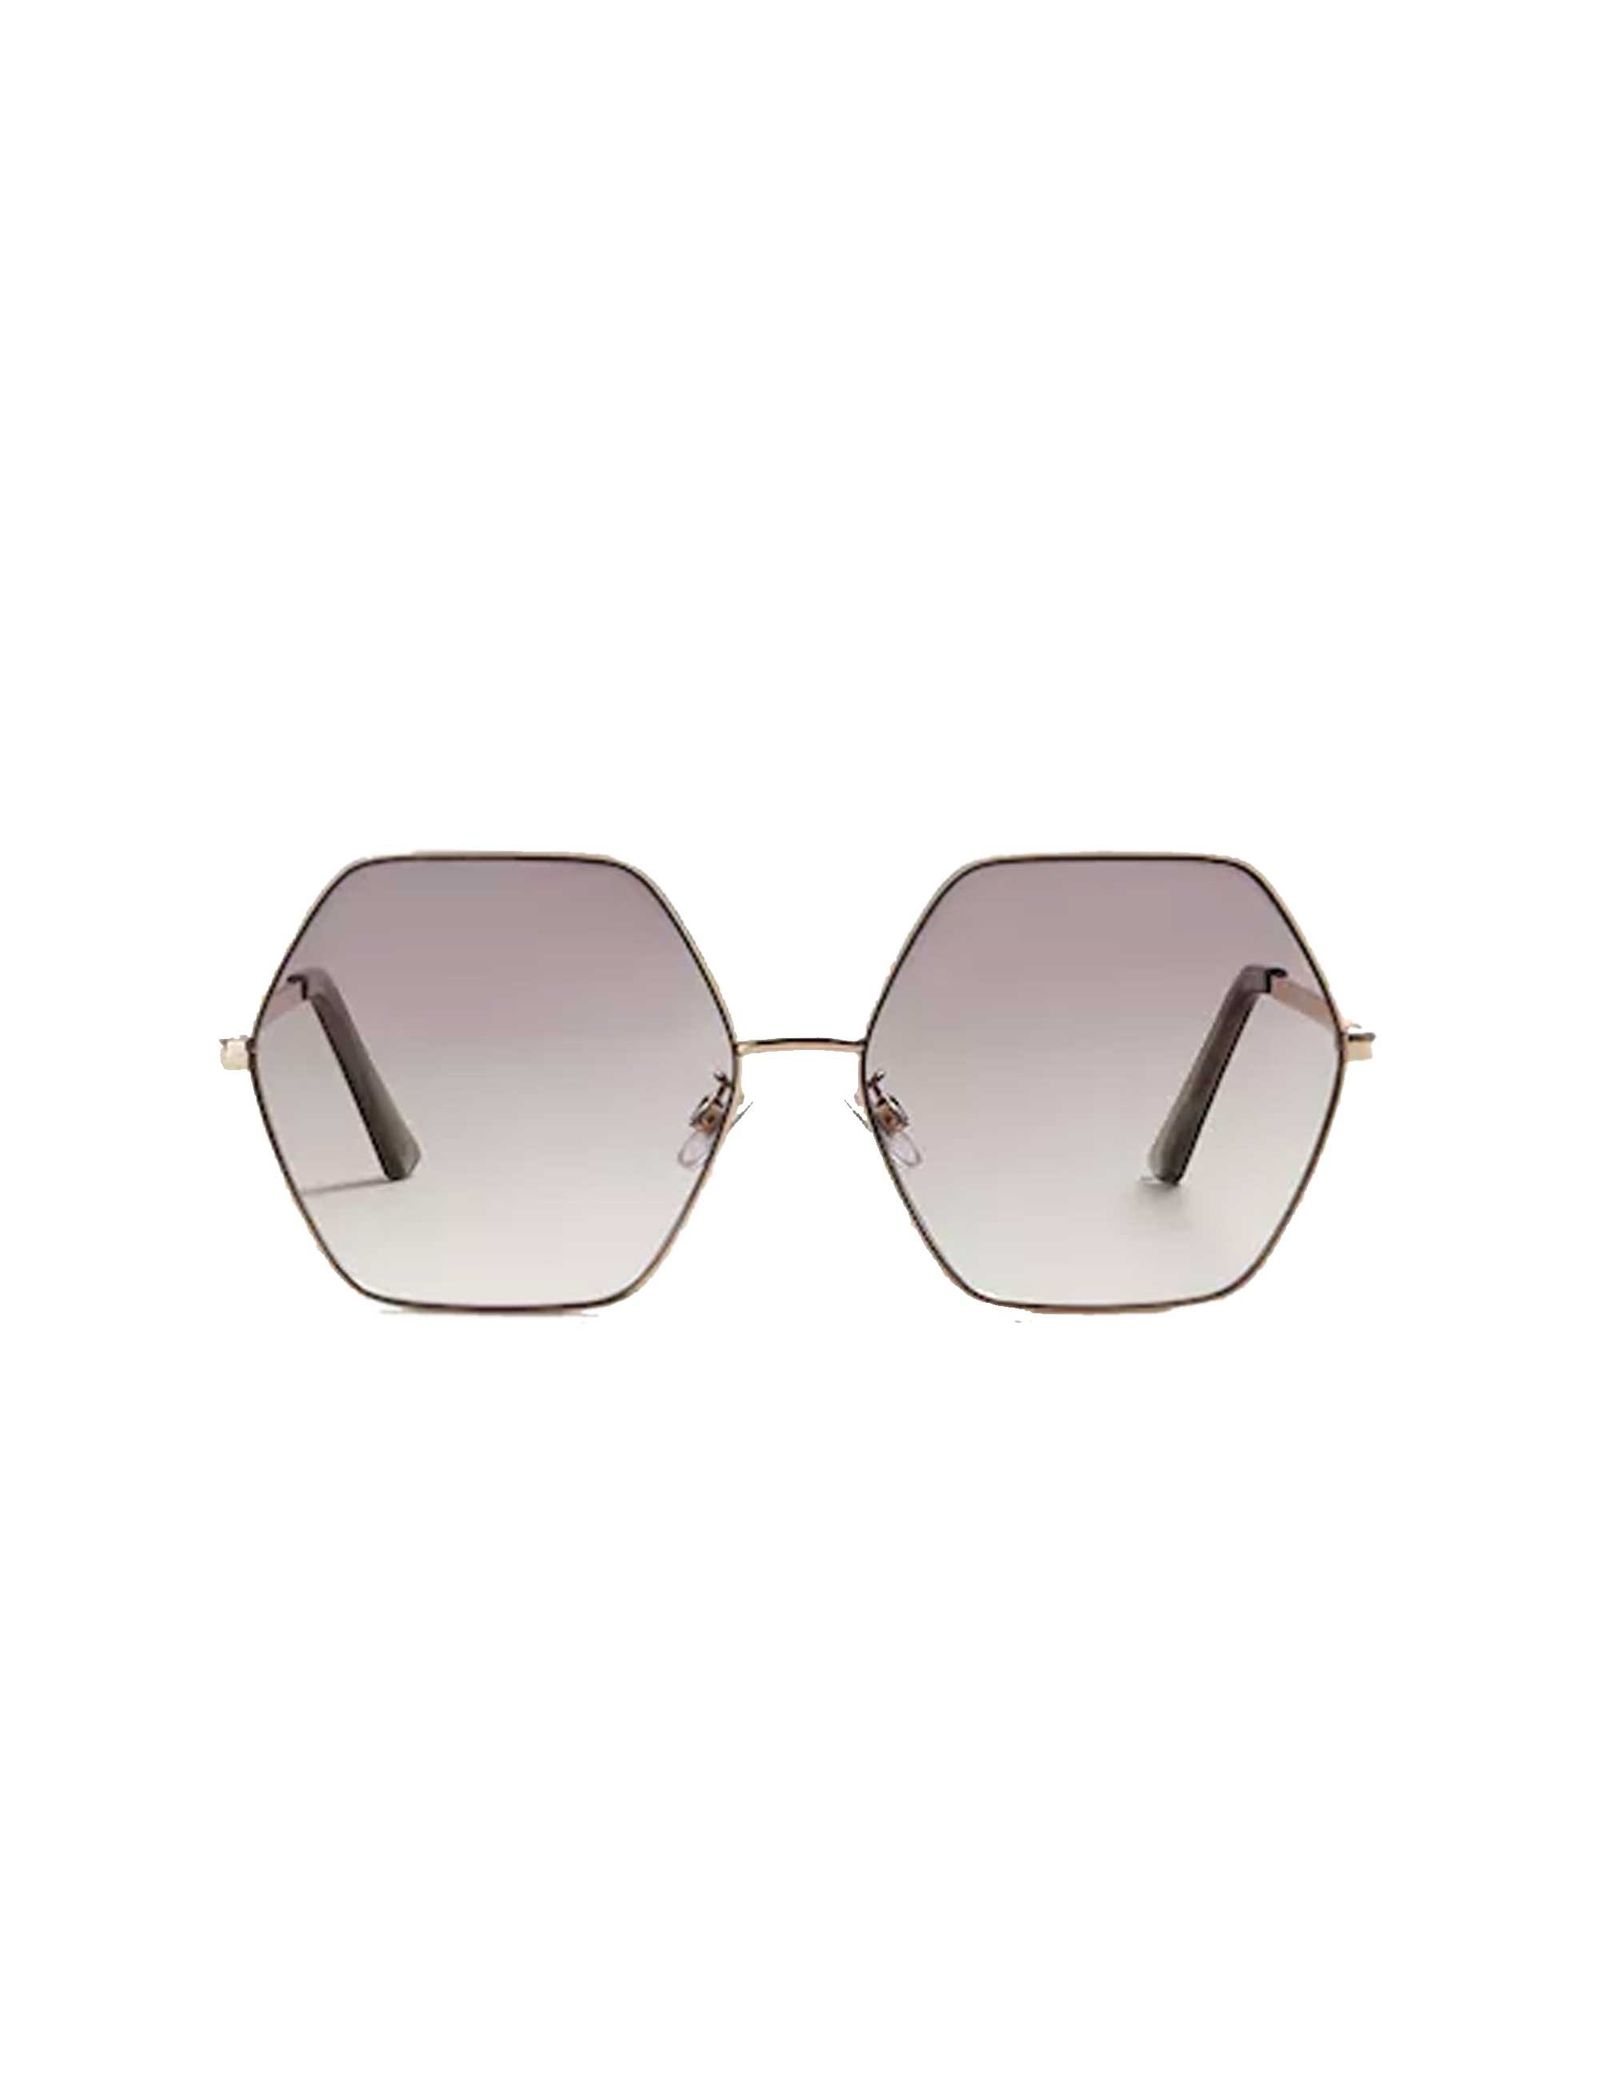 عینک آفتابی چند ضلعی زنانه - مانگو تک سایز - طلايي - 2